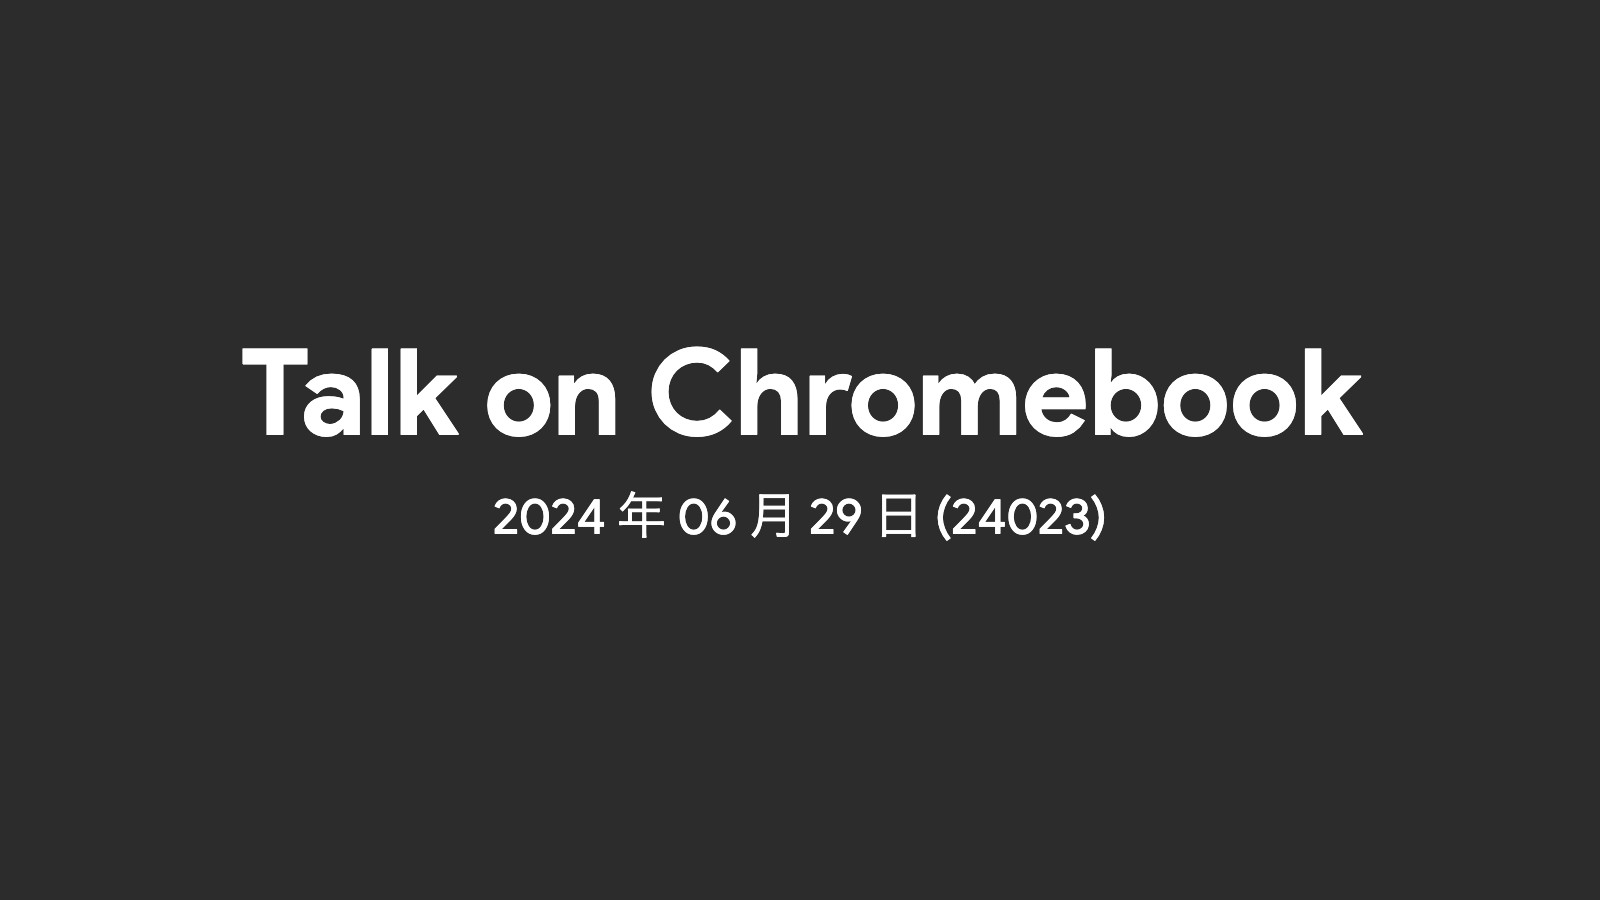 2024年06月29日 – 週間 Chromebook ニュース (24023)